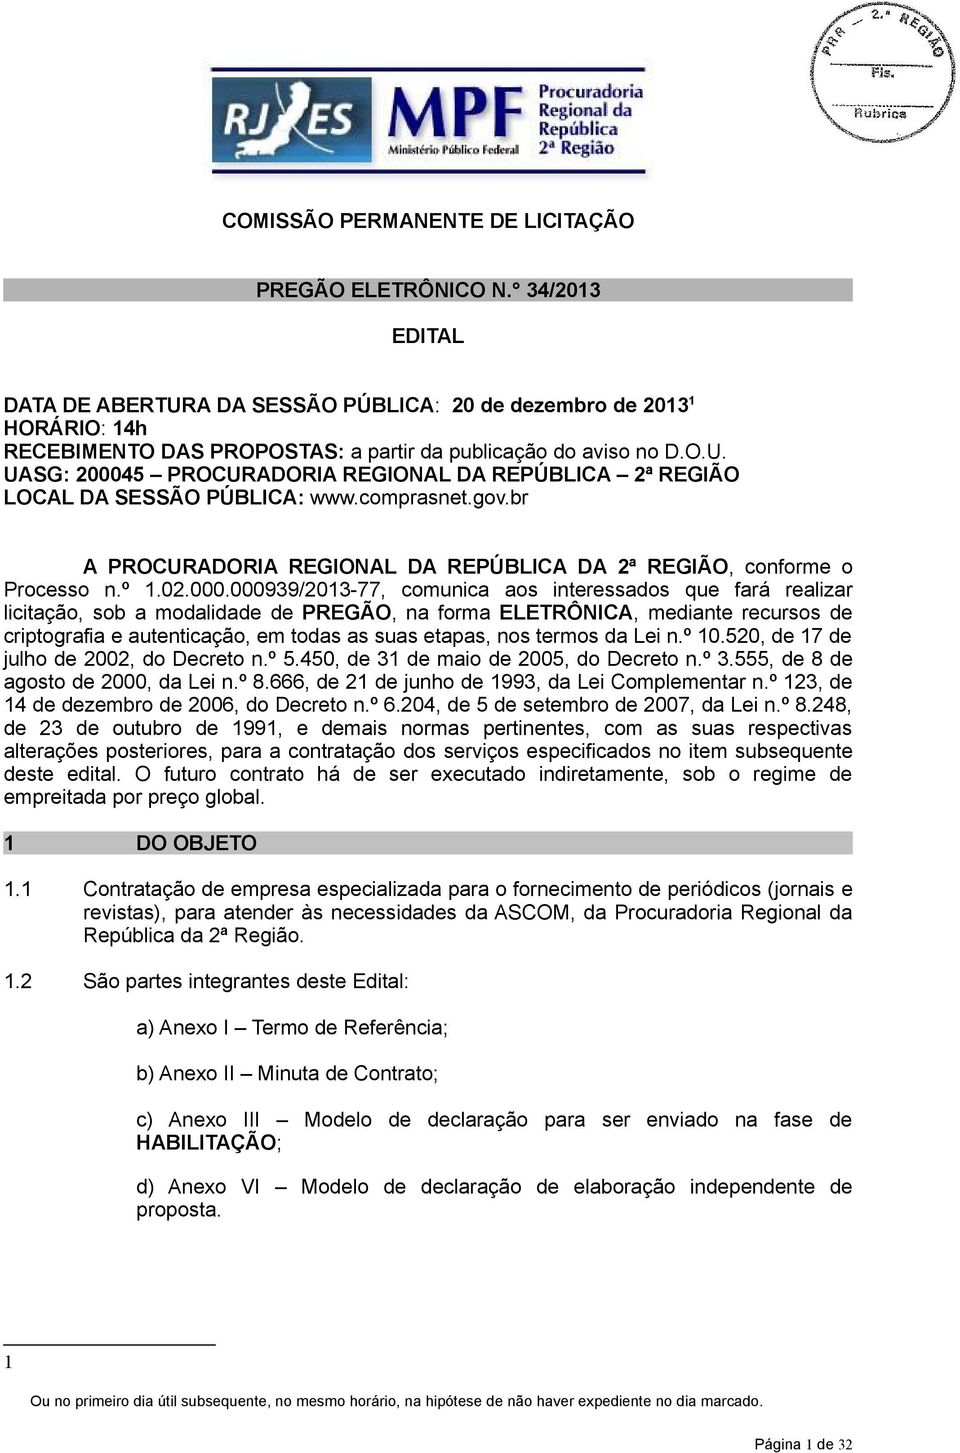 comprasnet.gov.br A PROCURADORIA REGIONAL DA REPÚBLICA DA 2ª REGIÃO, conforme o Processo n.º 1.02.000.